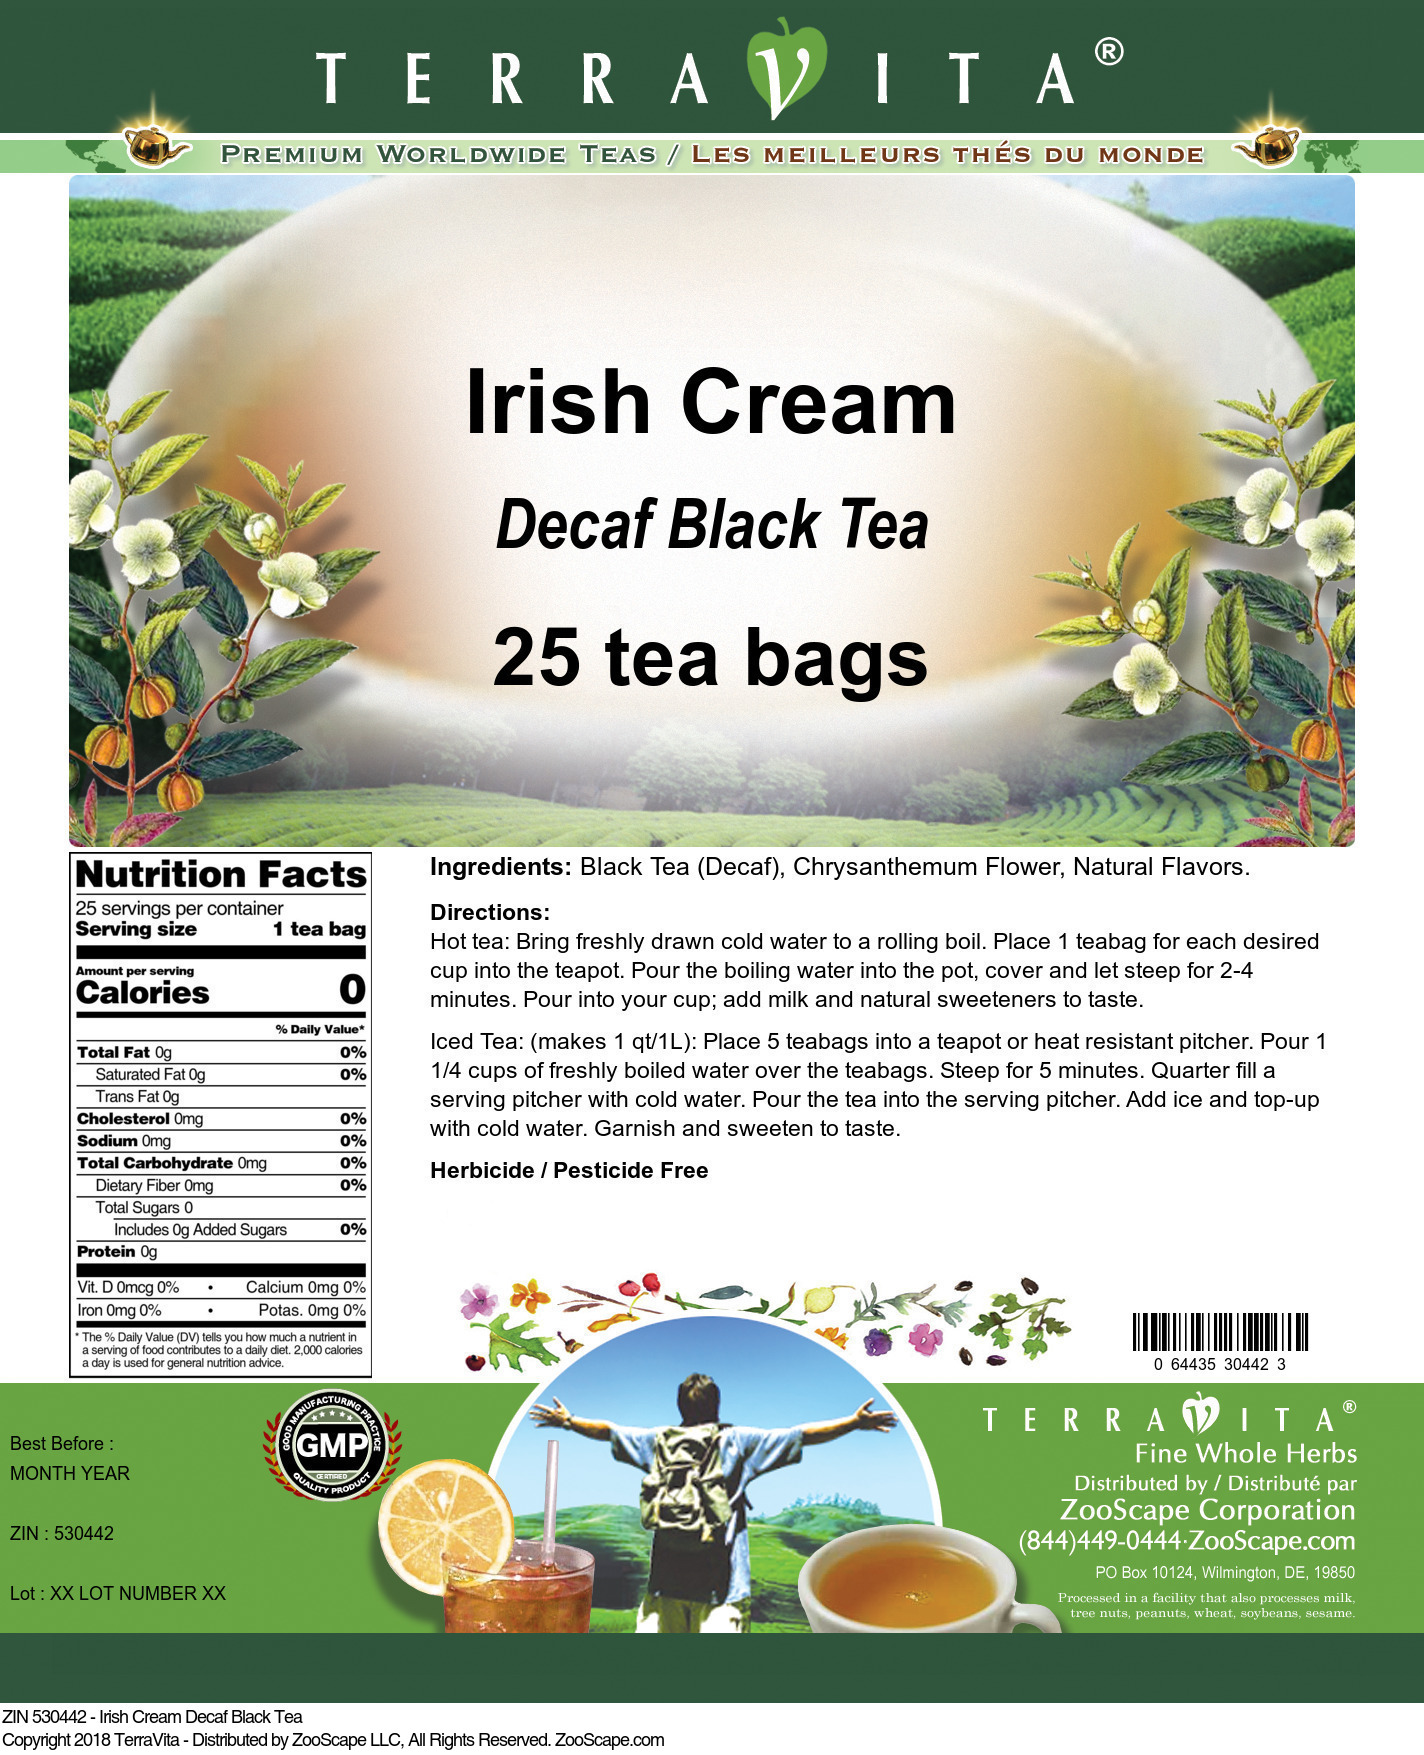 Irish Cream Decaf Black Tea - Label